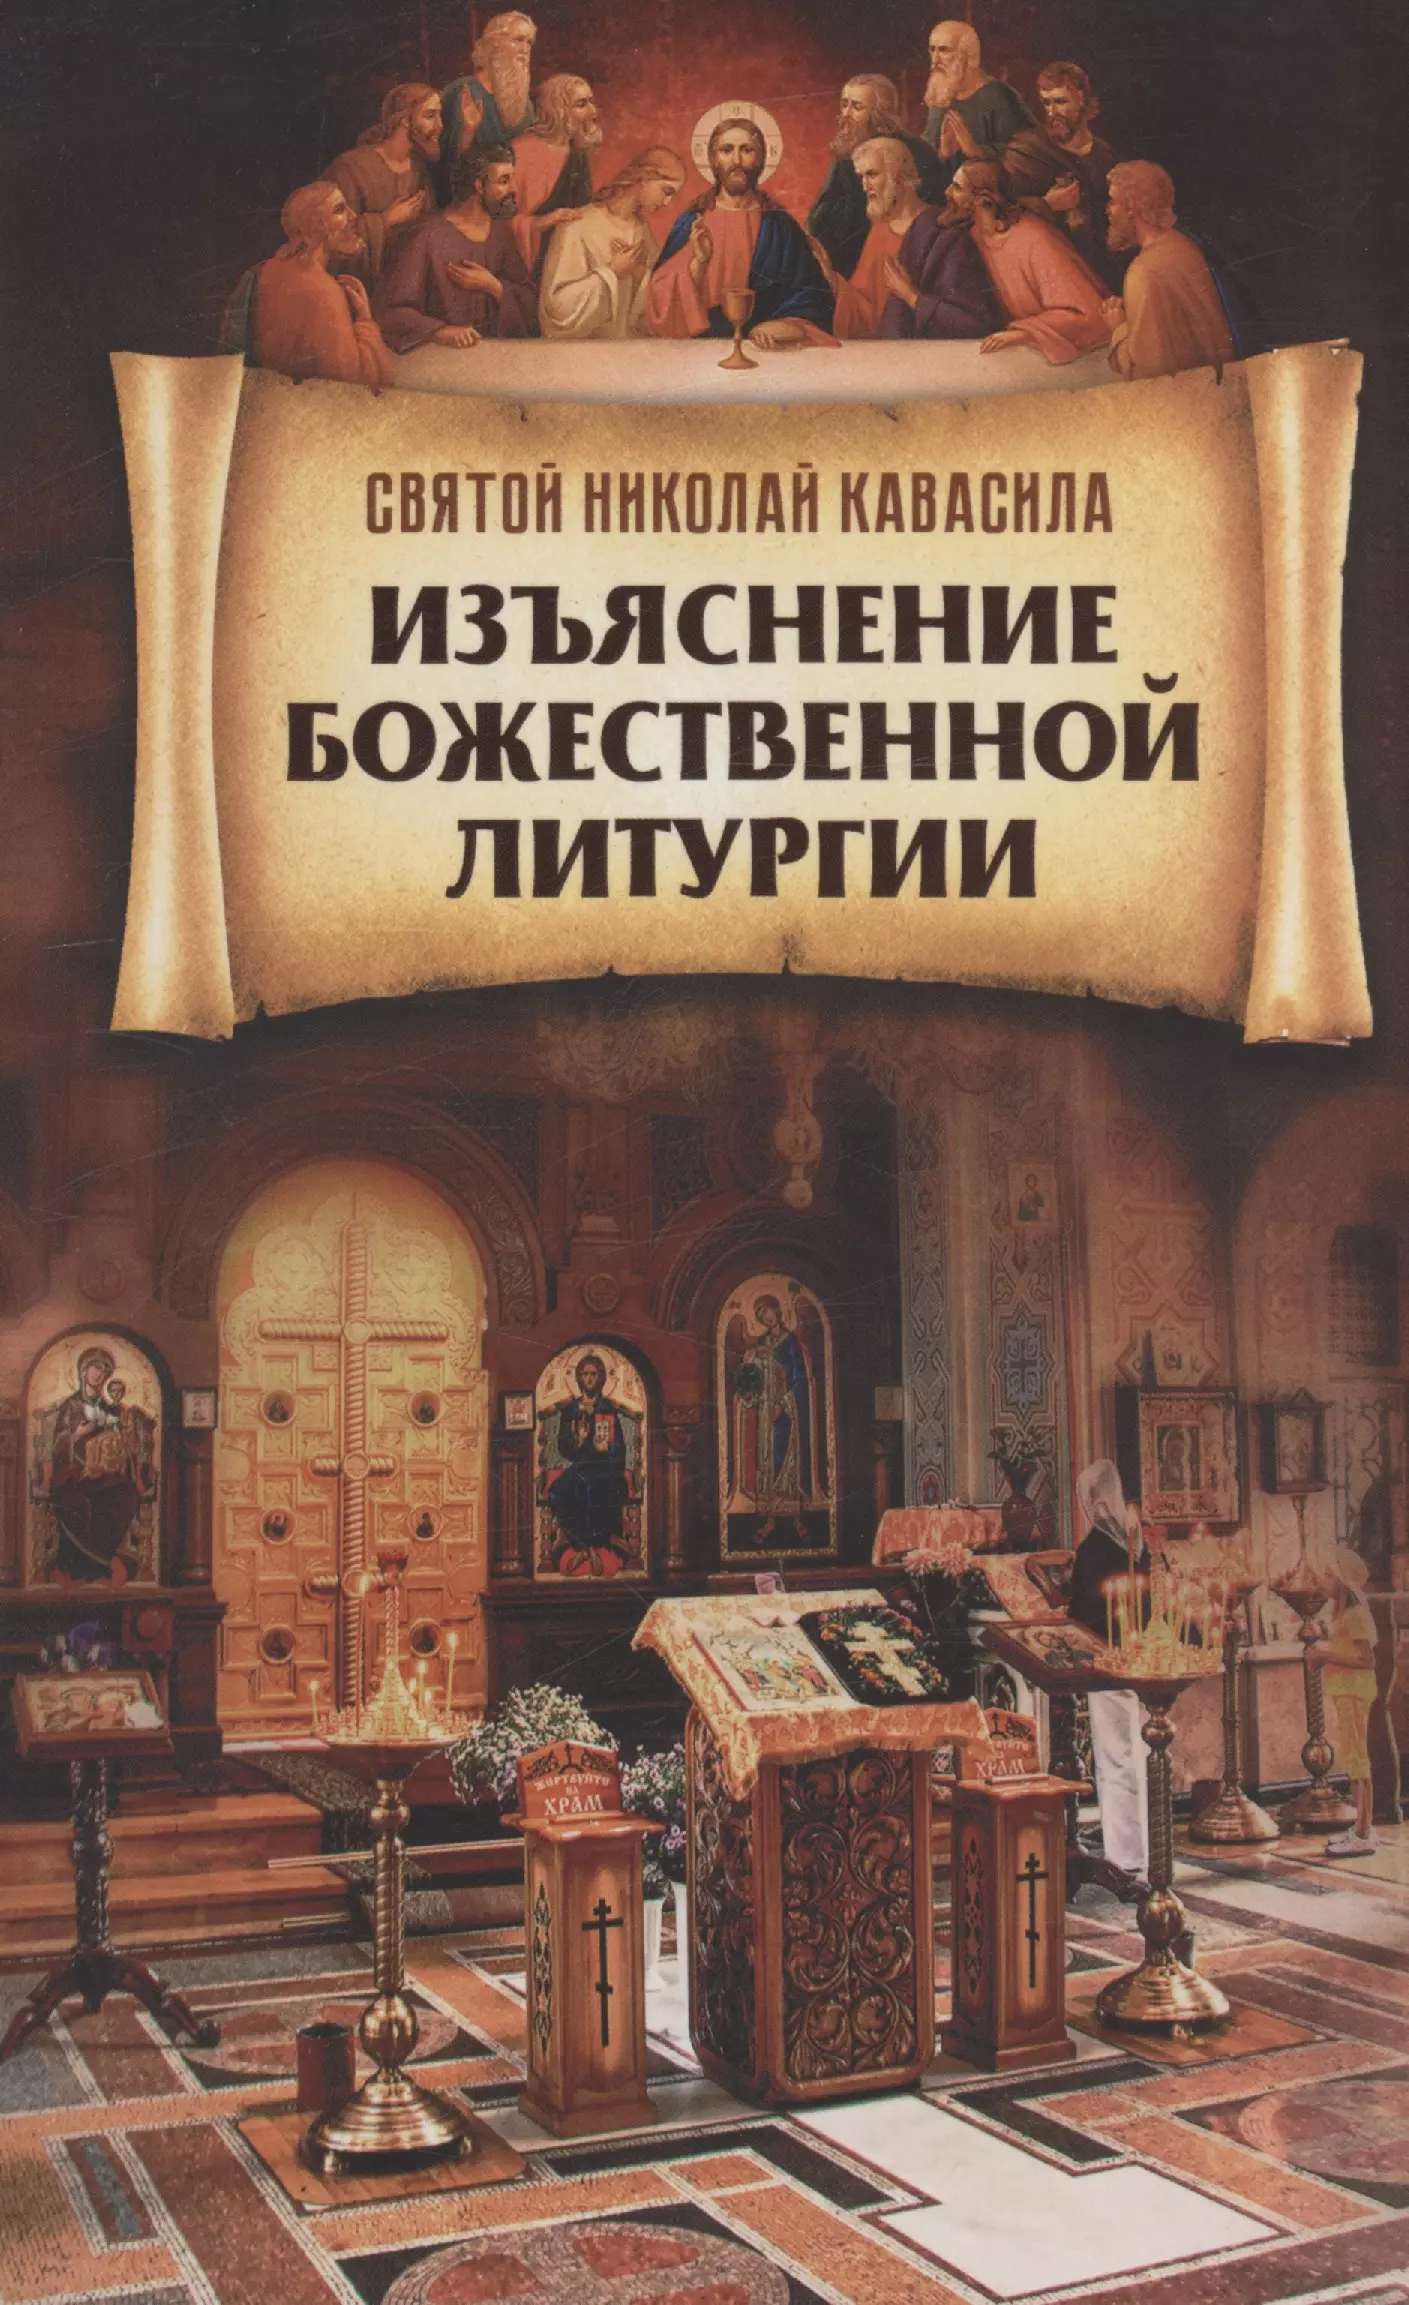 Святитель Кавасила Николай Изъяснение Божественной Литургии изъяснение божественной литургии